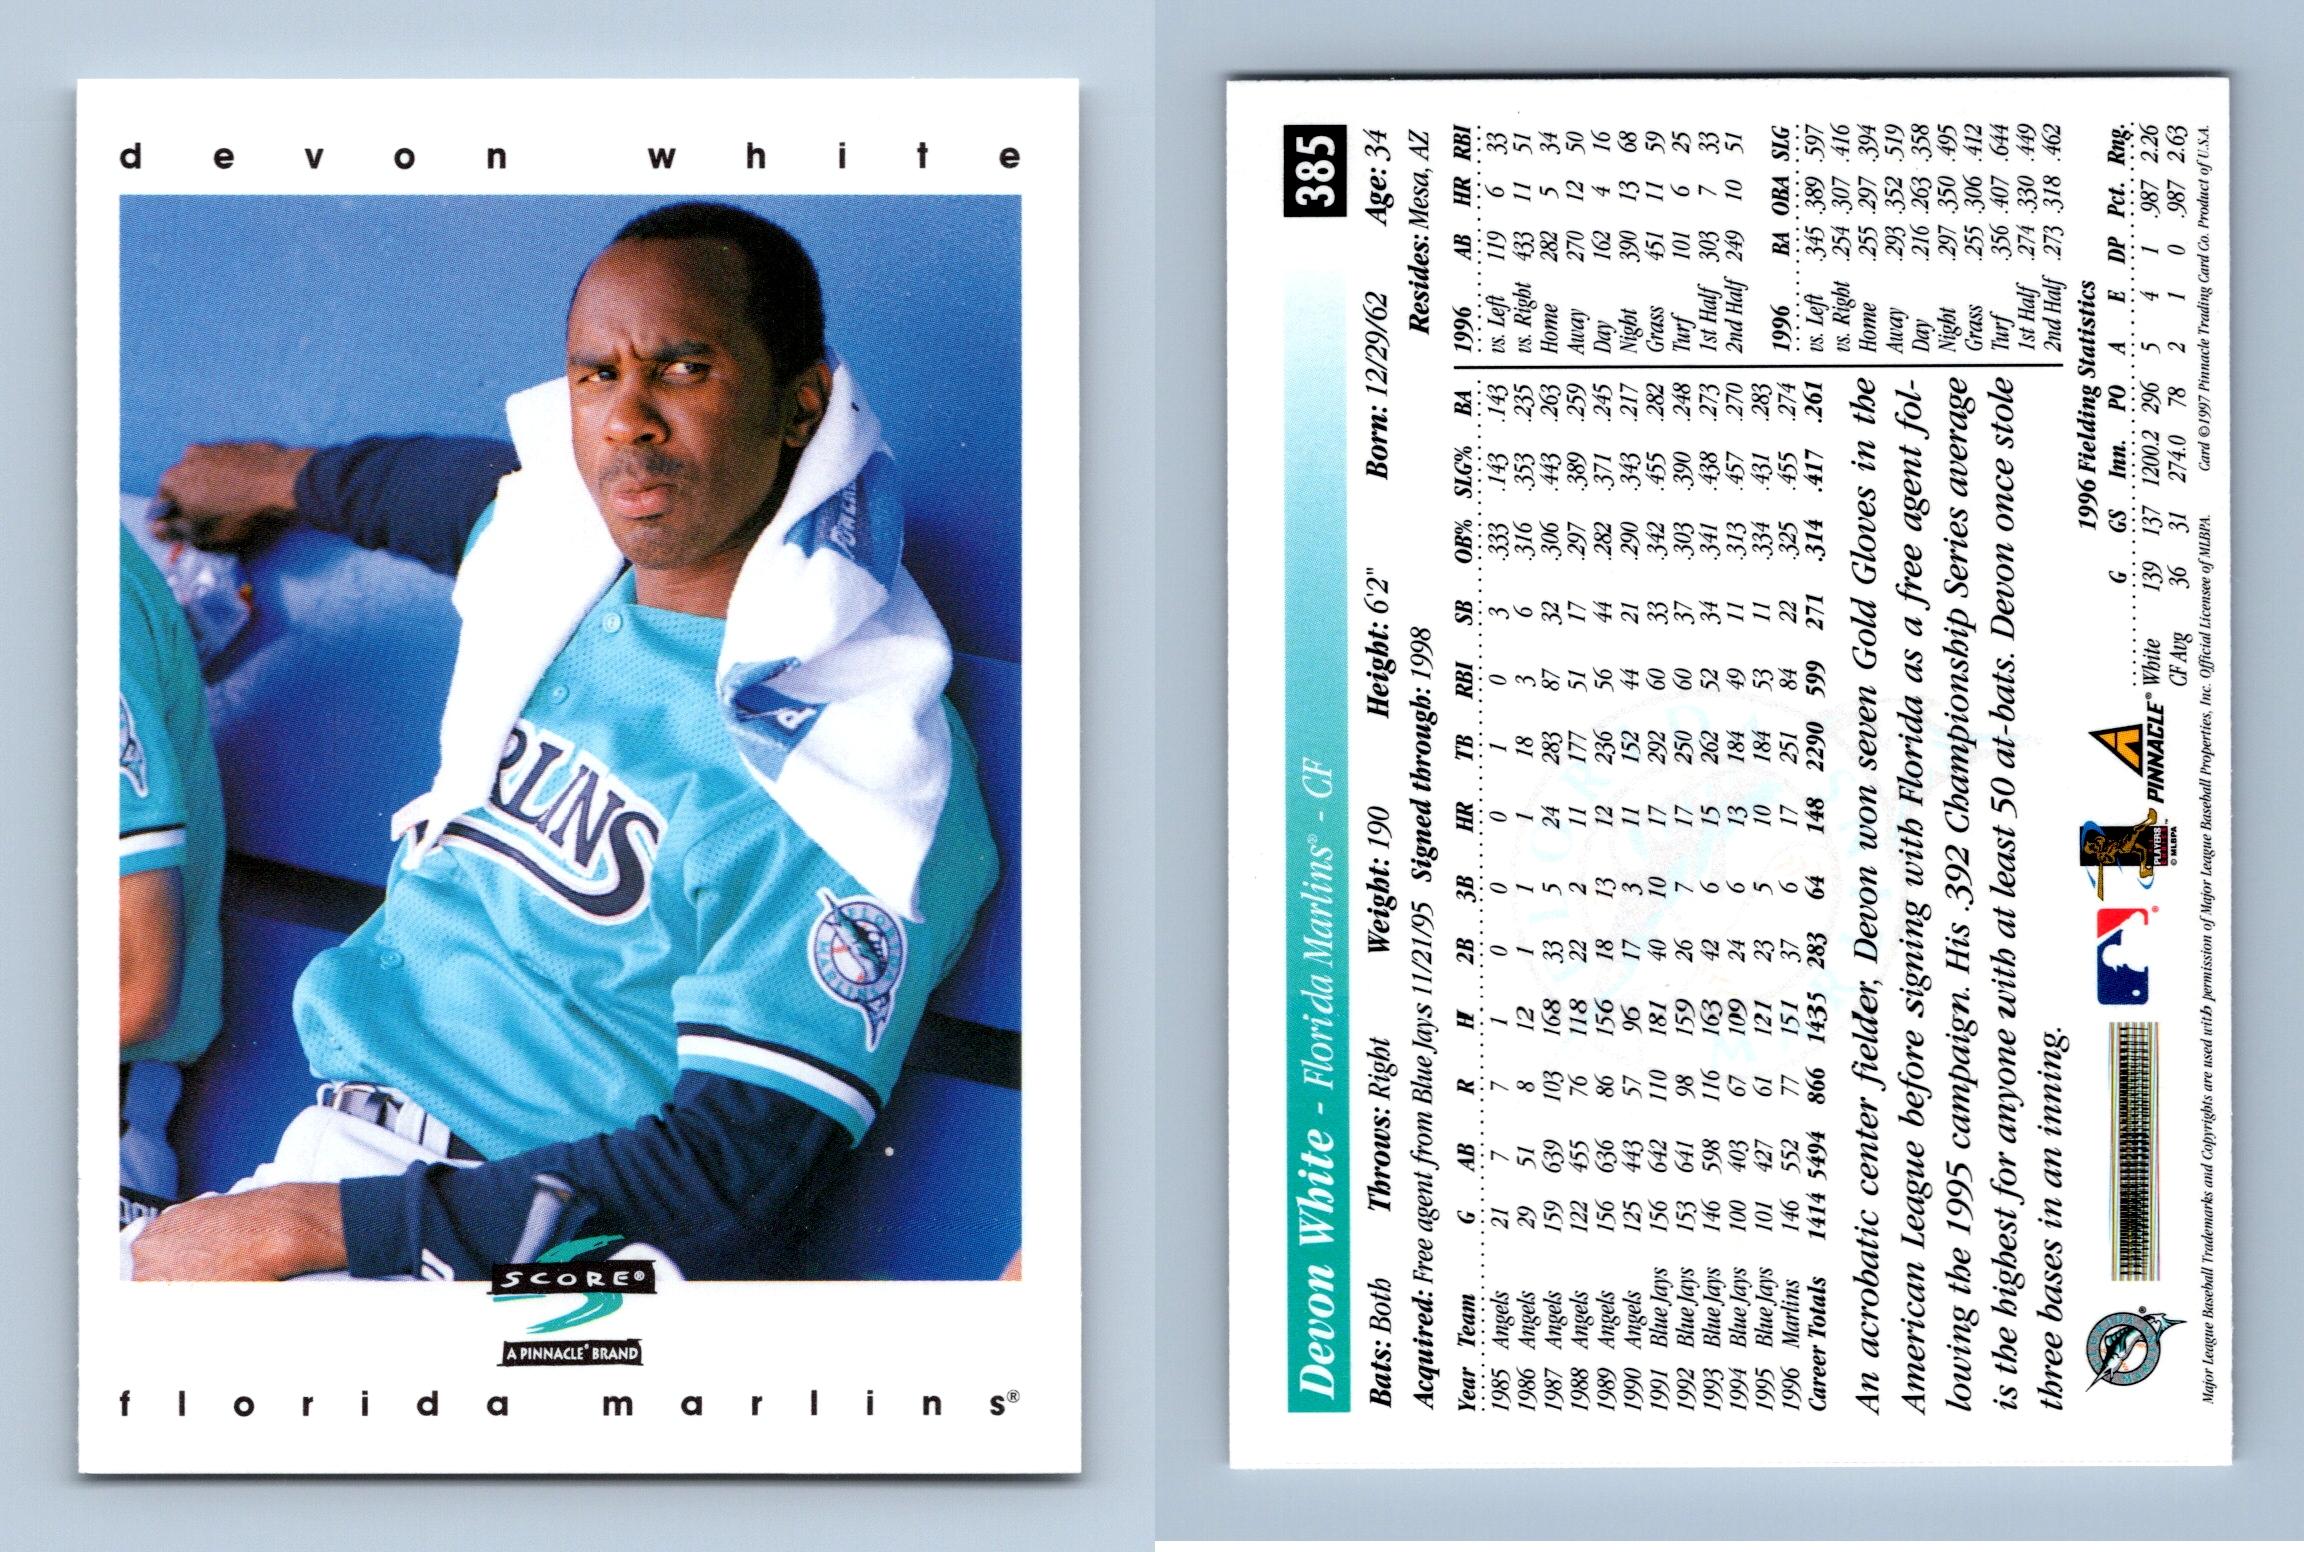 Devon White Signed 1997 Upper Deck Baseball Card - Florida Marlins